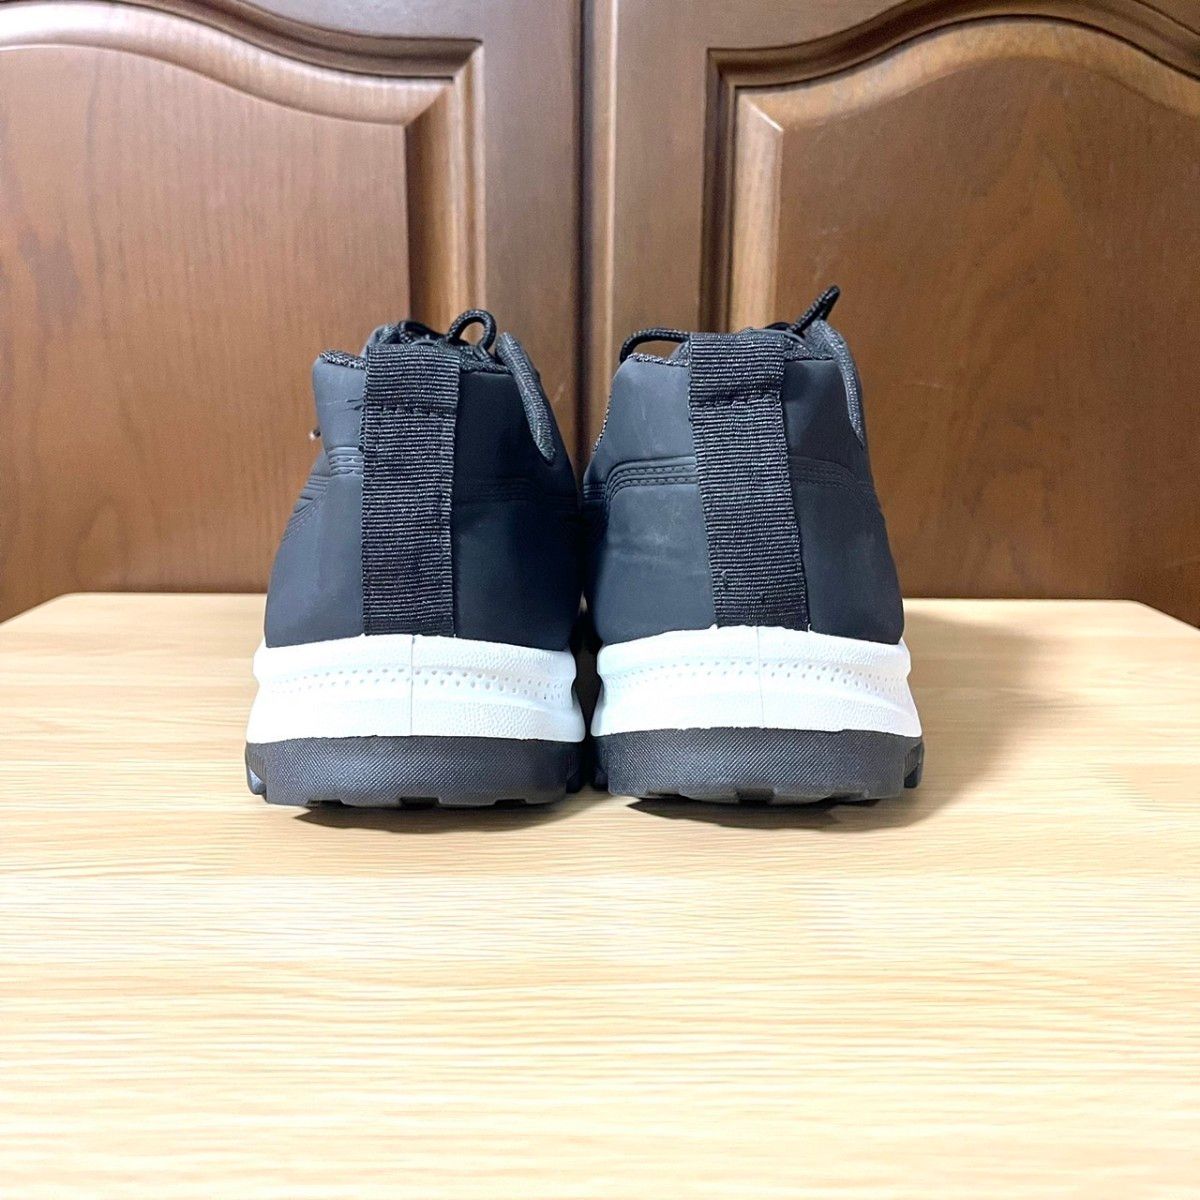 スニーカー メンズ カジュアル 合革 防水 通勤 通学 作業靴 レッド 26.0